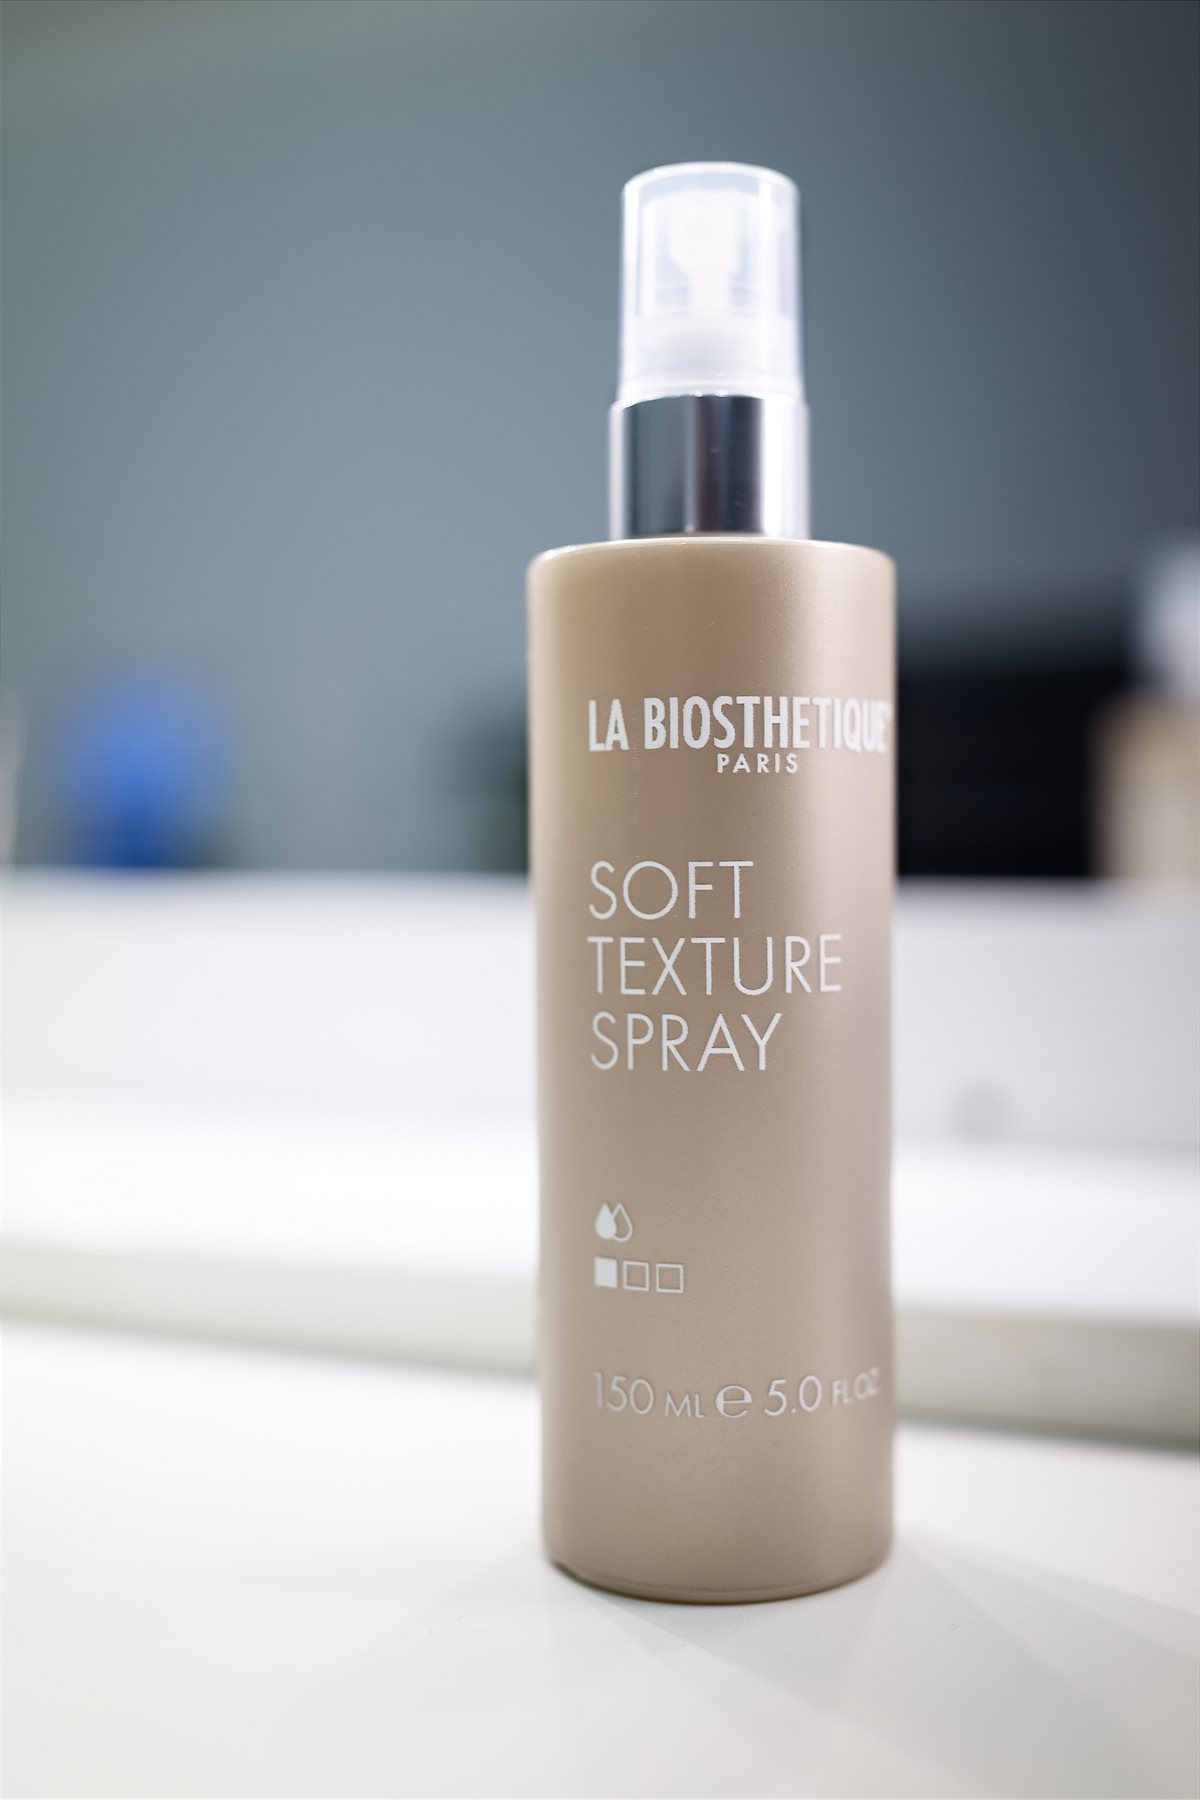 La Biosthétique_Trend_soft texture spray_150ml_EUR 20,50 (UVP)